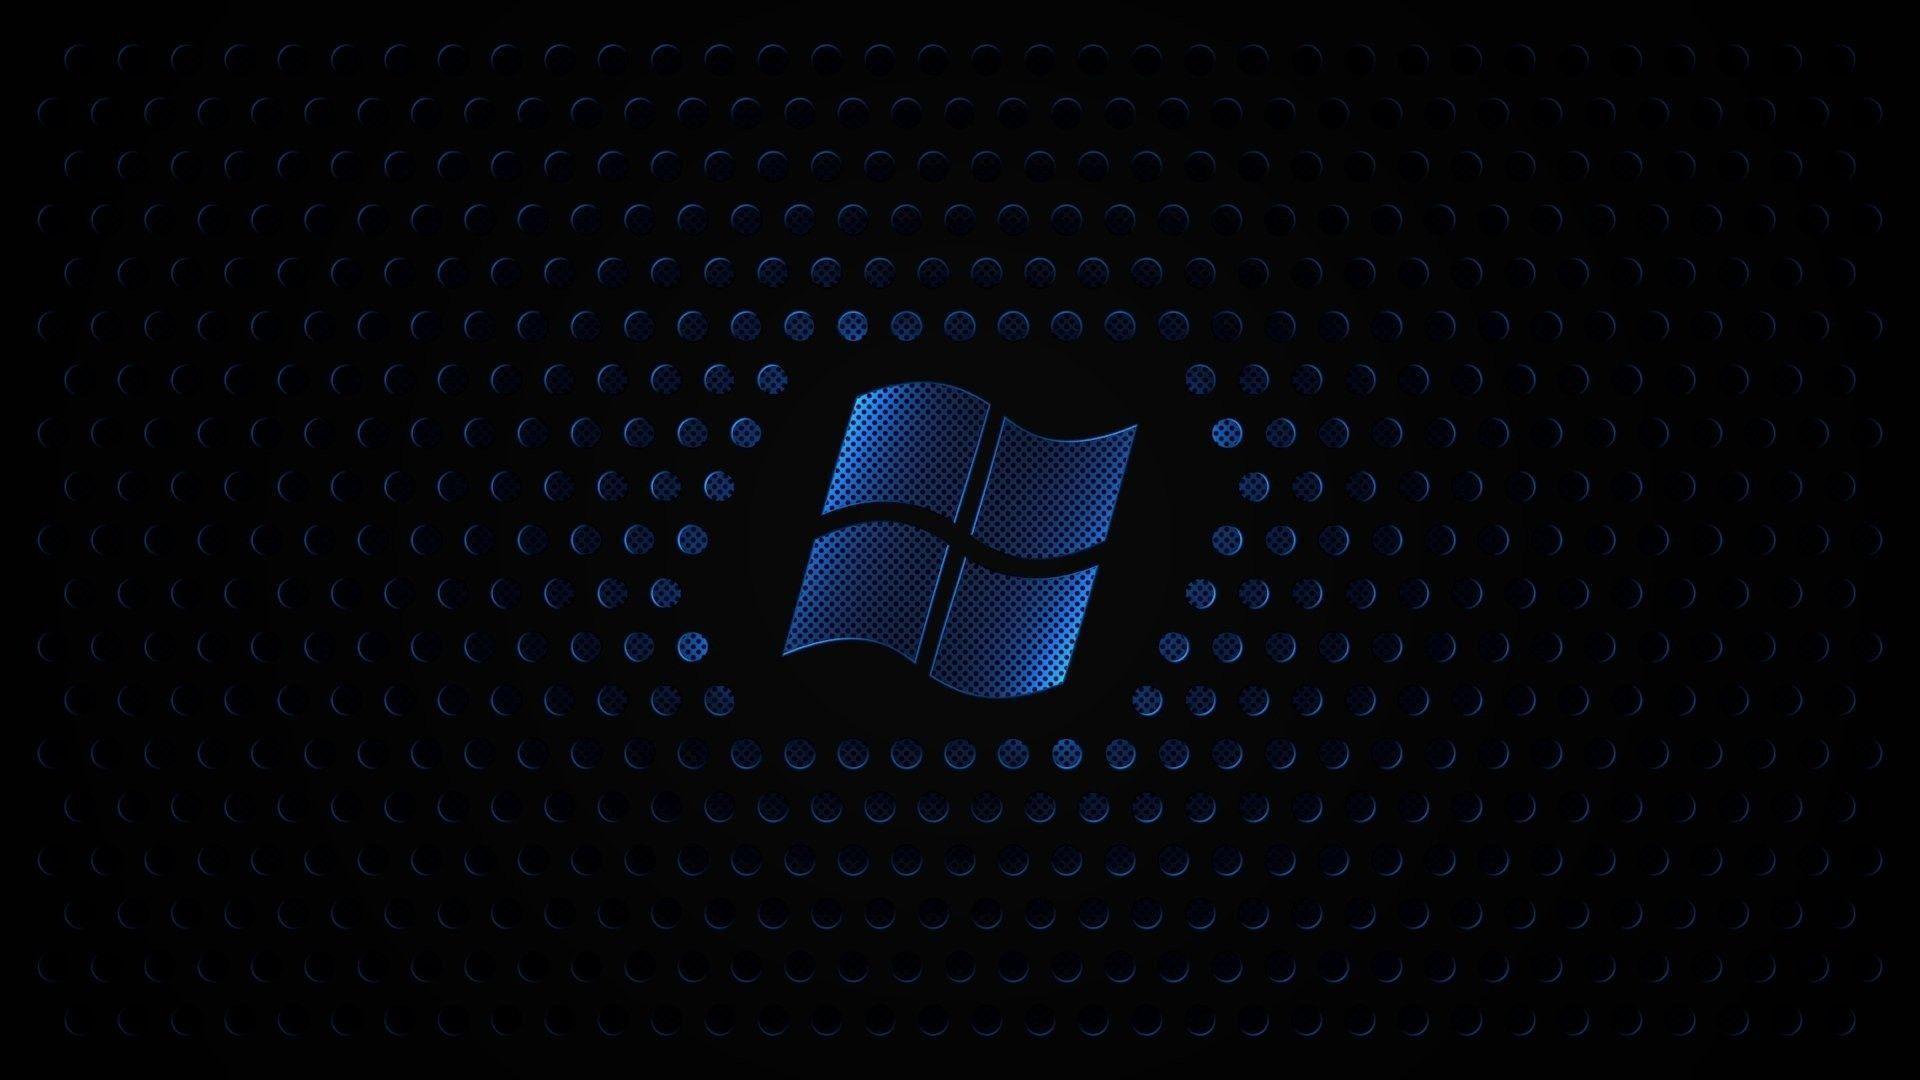 hd wallpaper Windows Xp Microsoft Logos